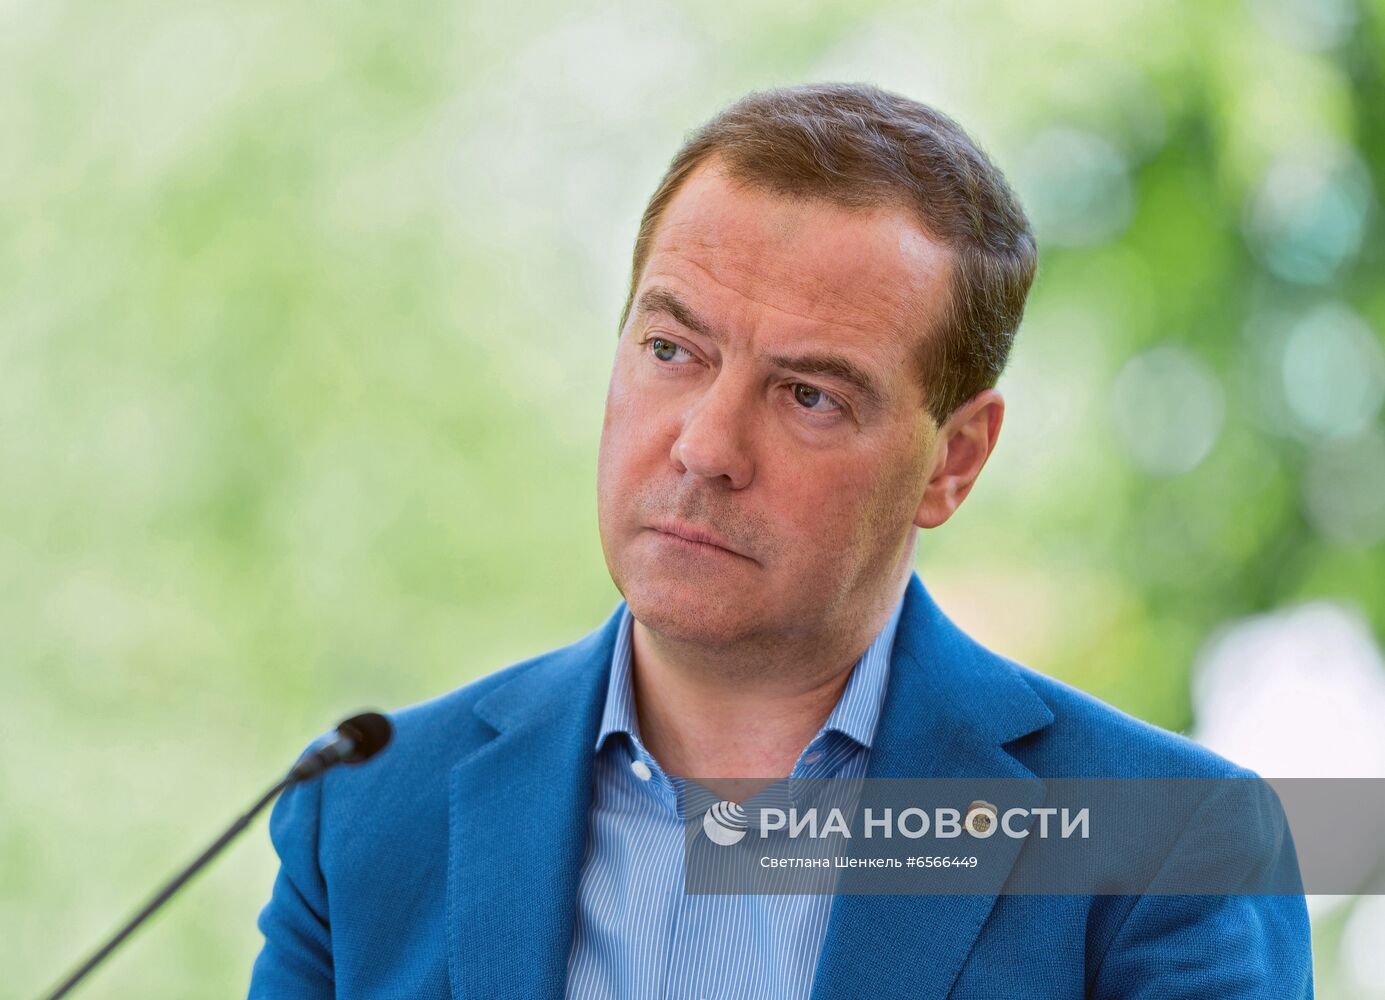 Председатель партии "Единая Россия" Д. Медведев принял участие в работе стратегической сессии "Экология"